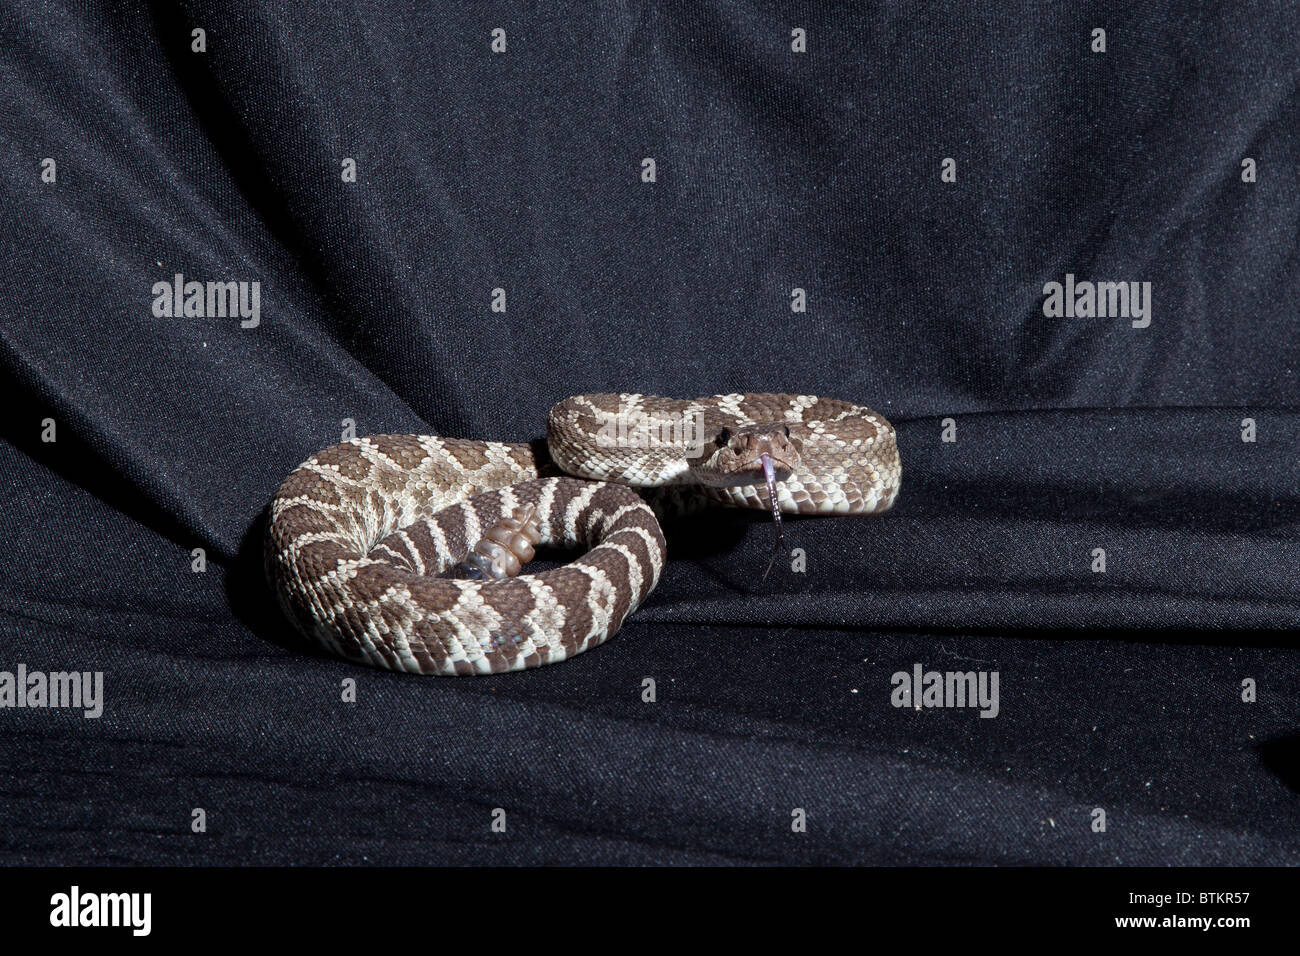 Captive rattlesnake Stock Photo